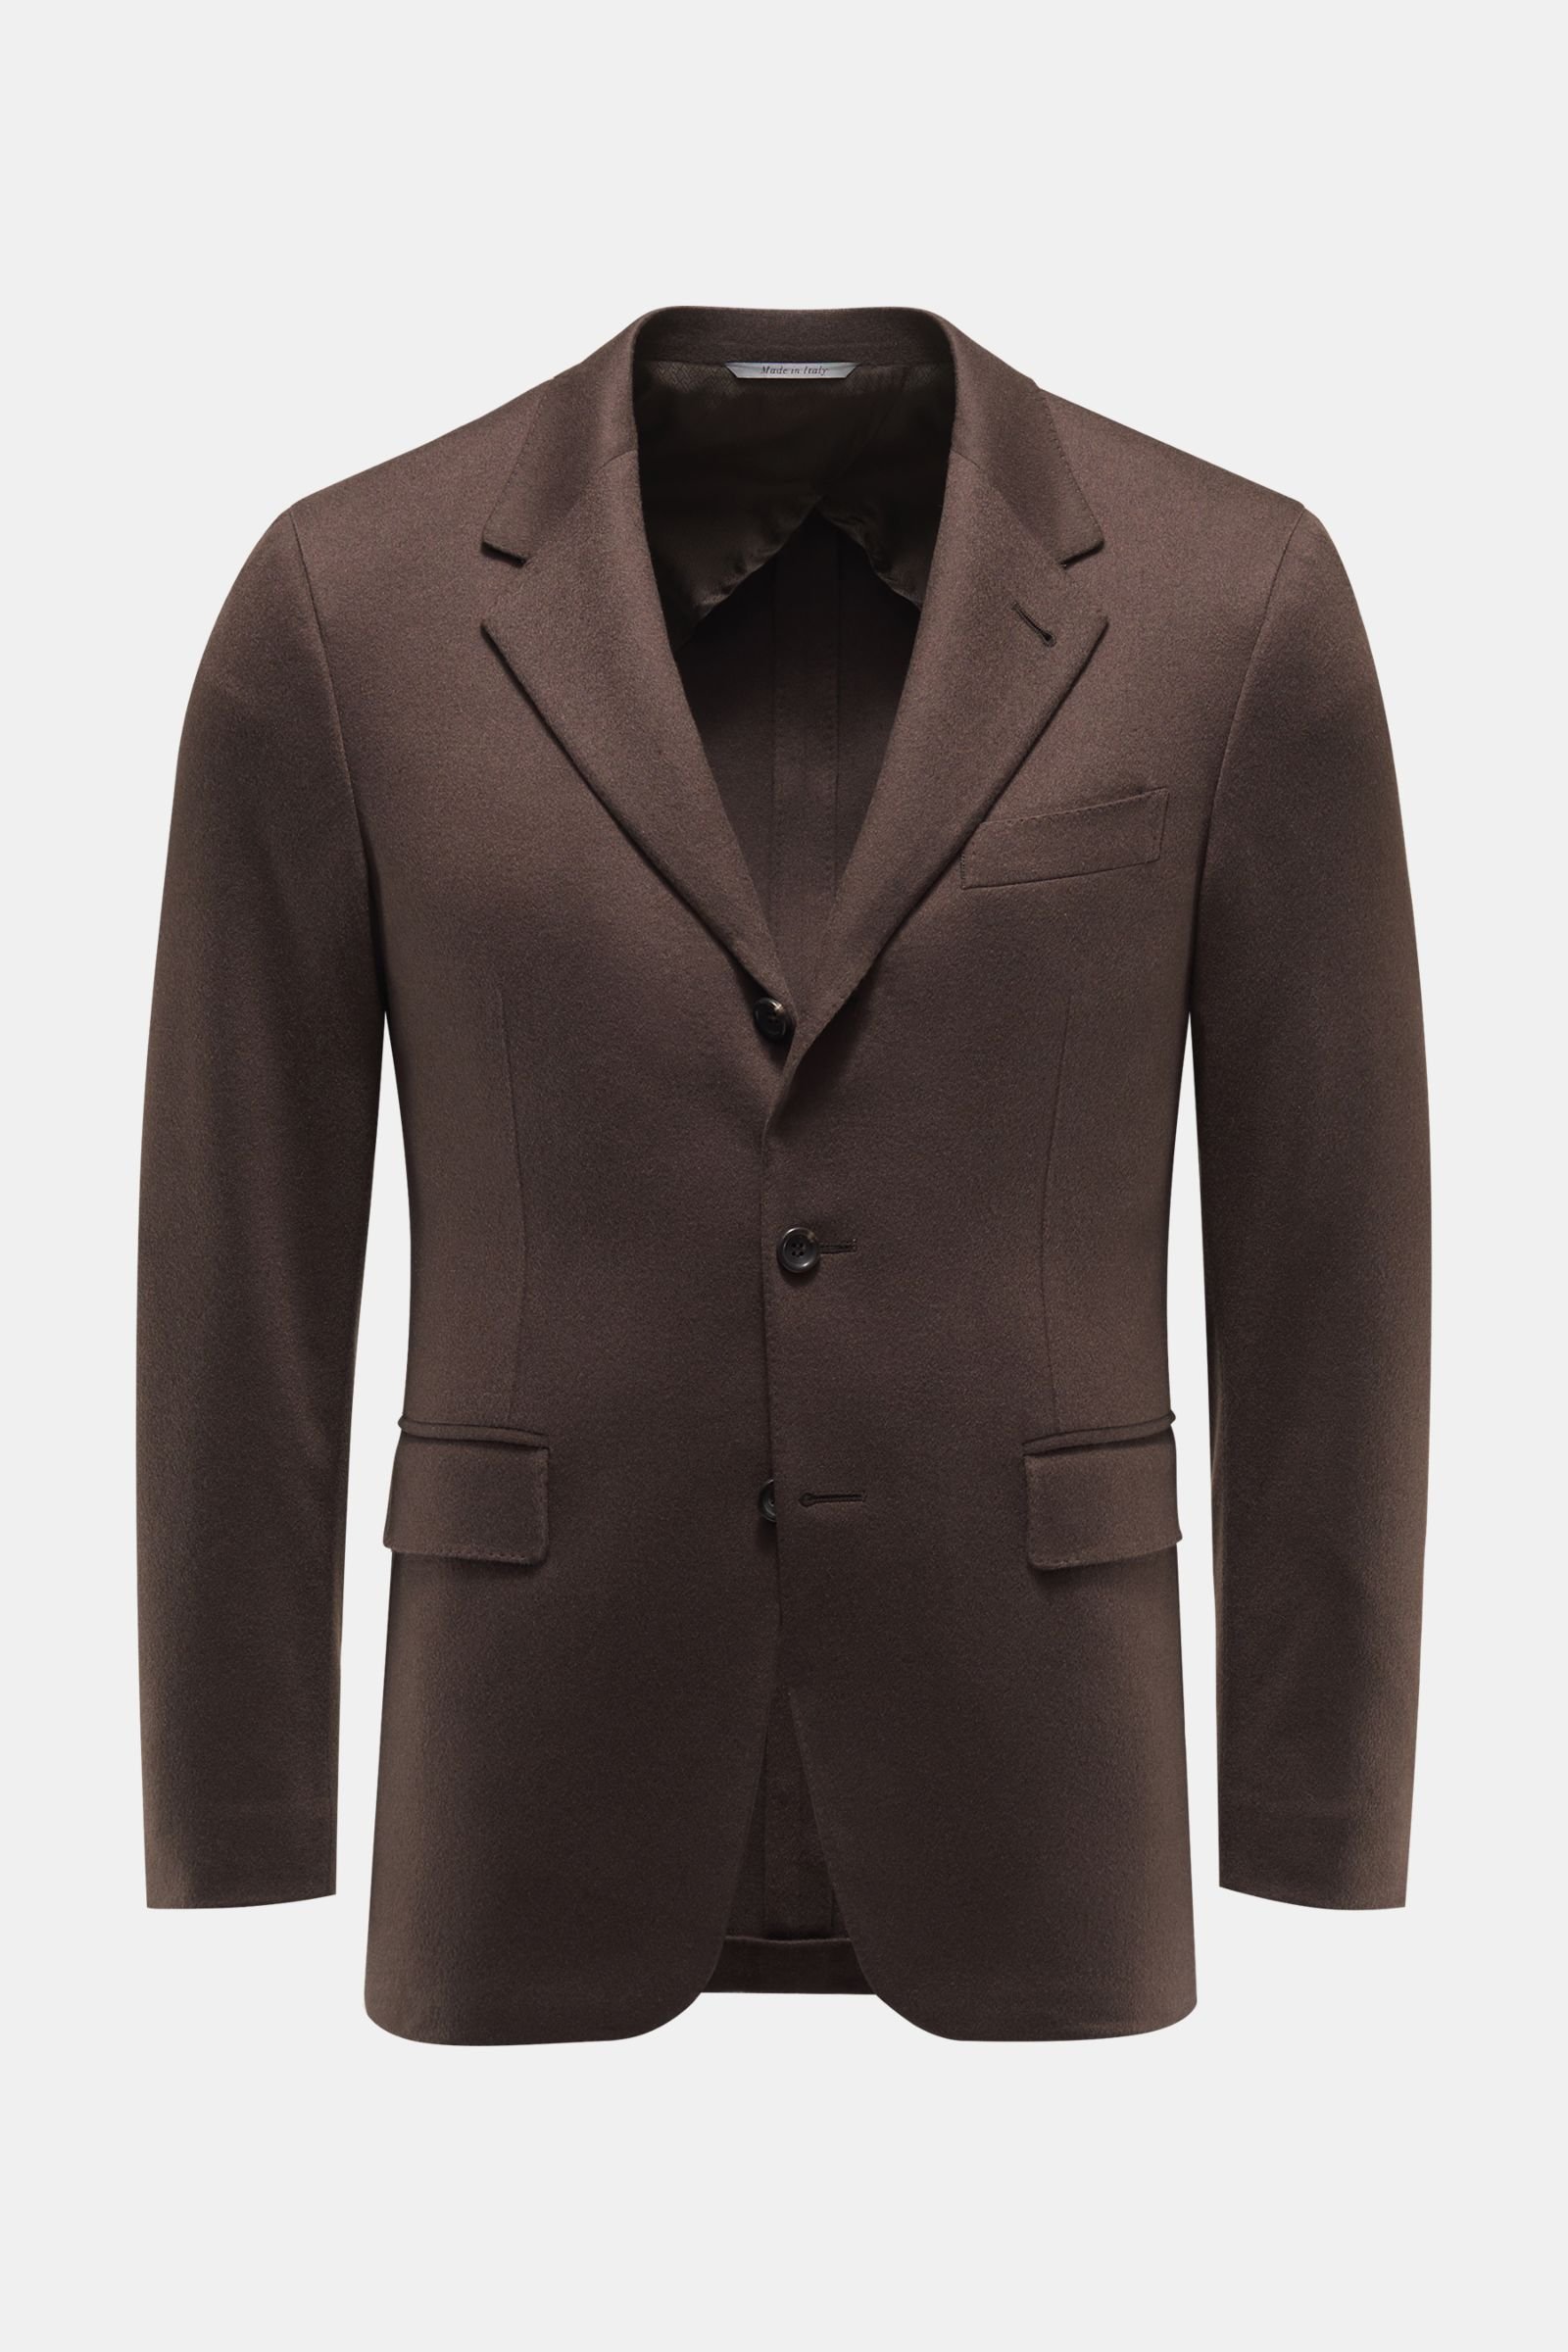 Cashmere jacket dark brown